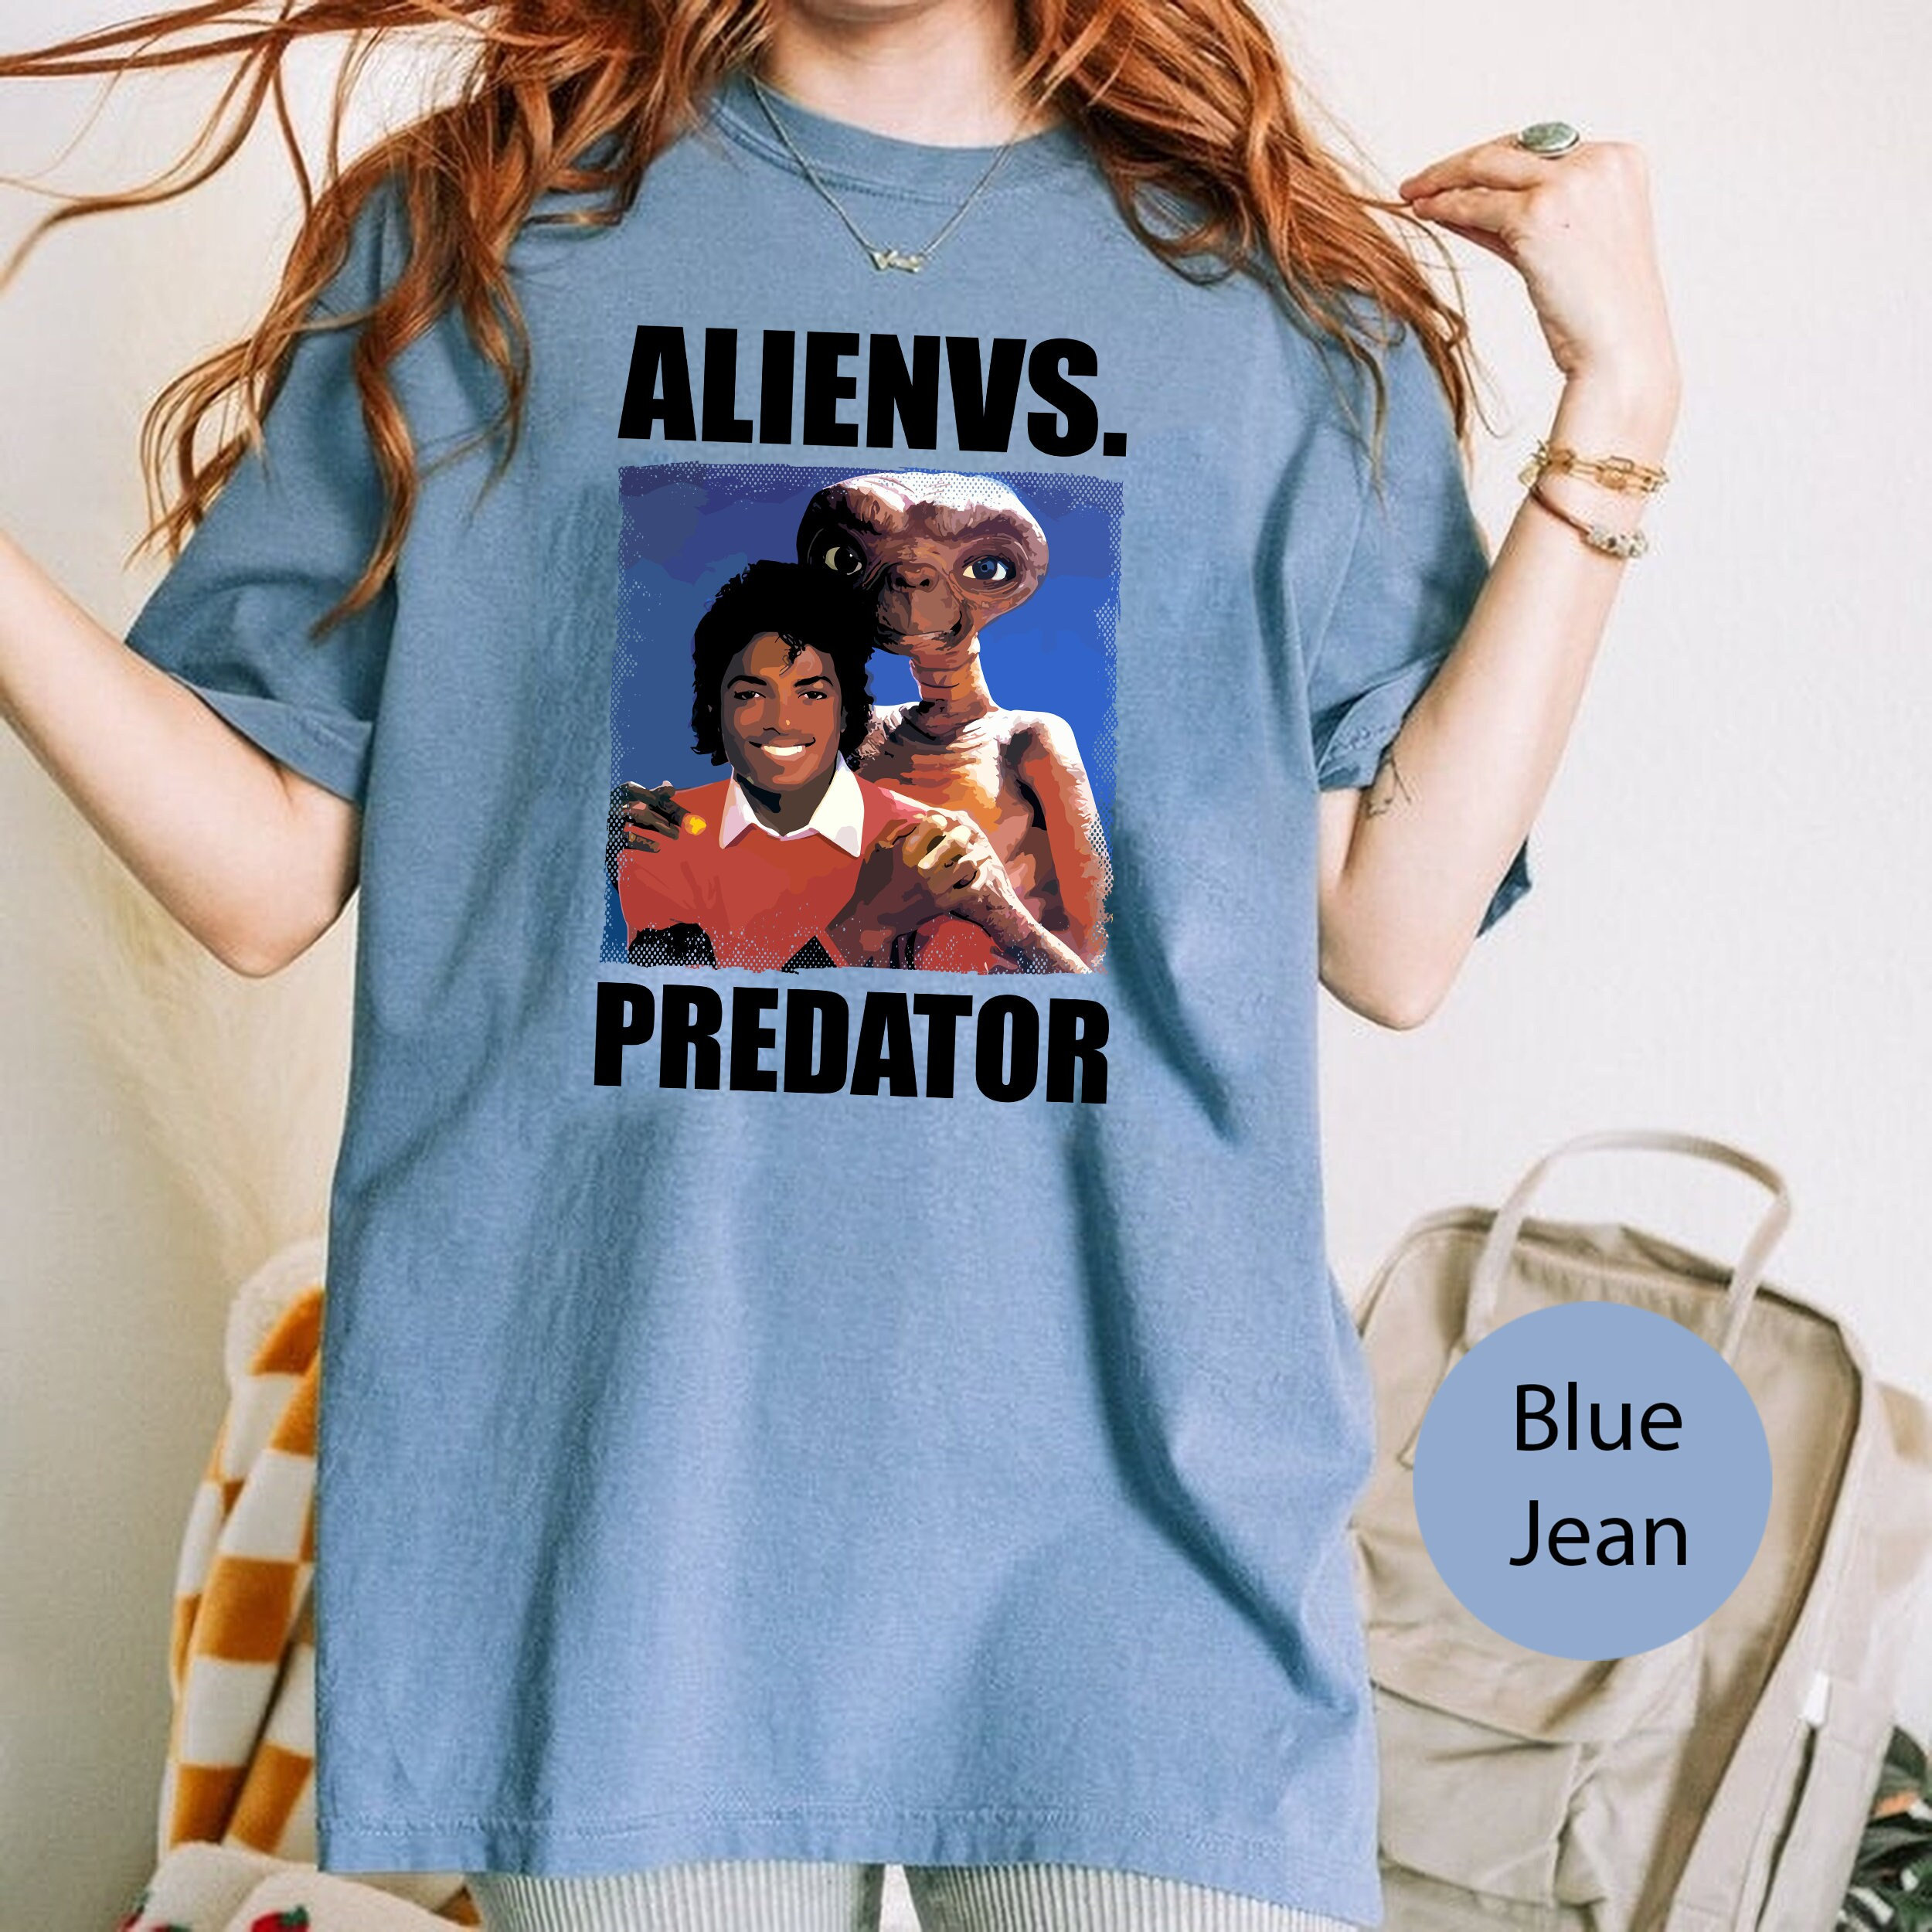 Predator T-Shirt Adult – ButterflySlide